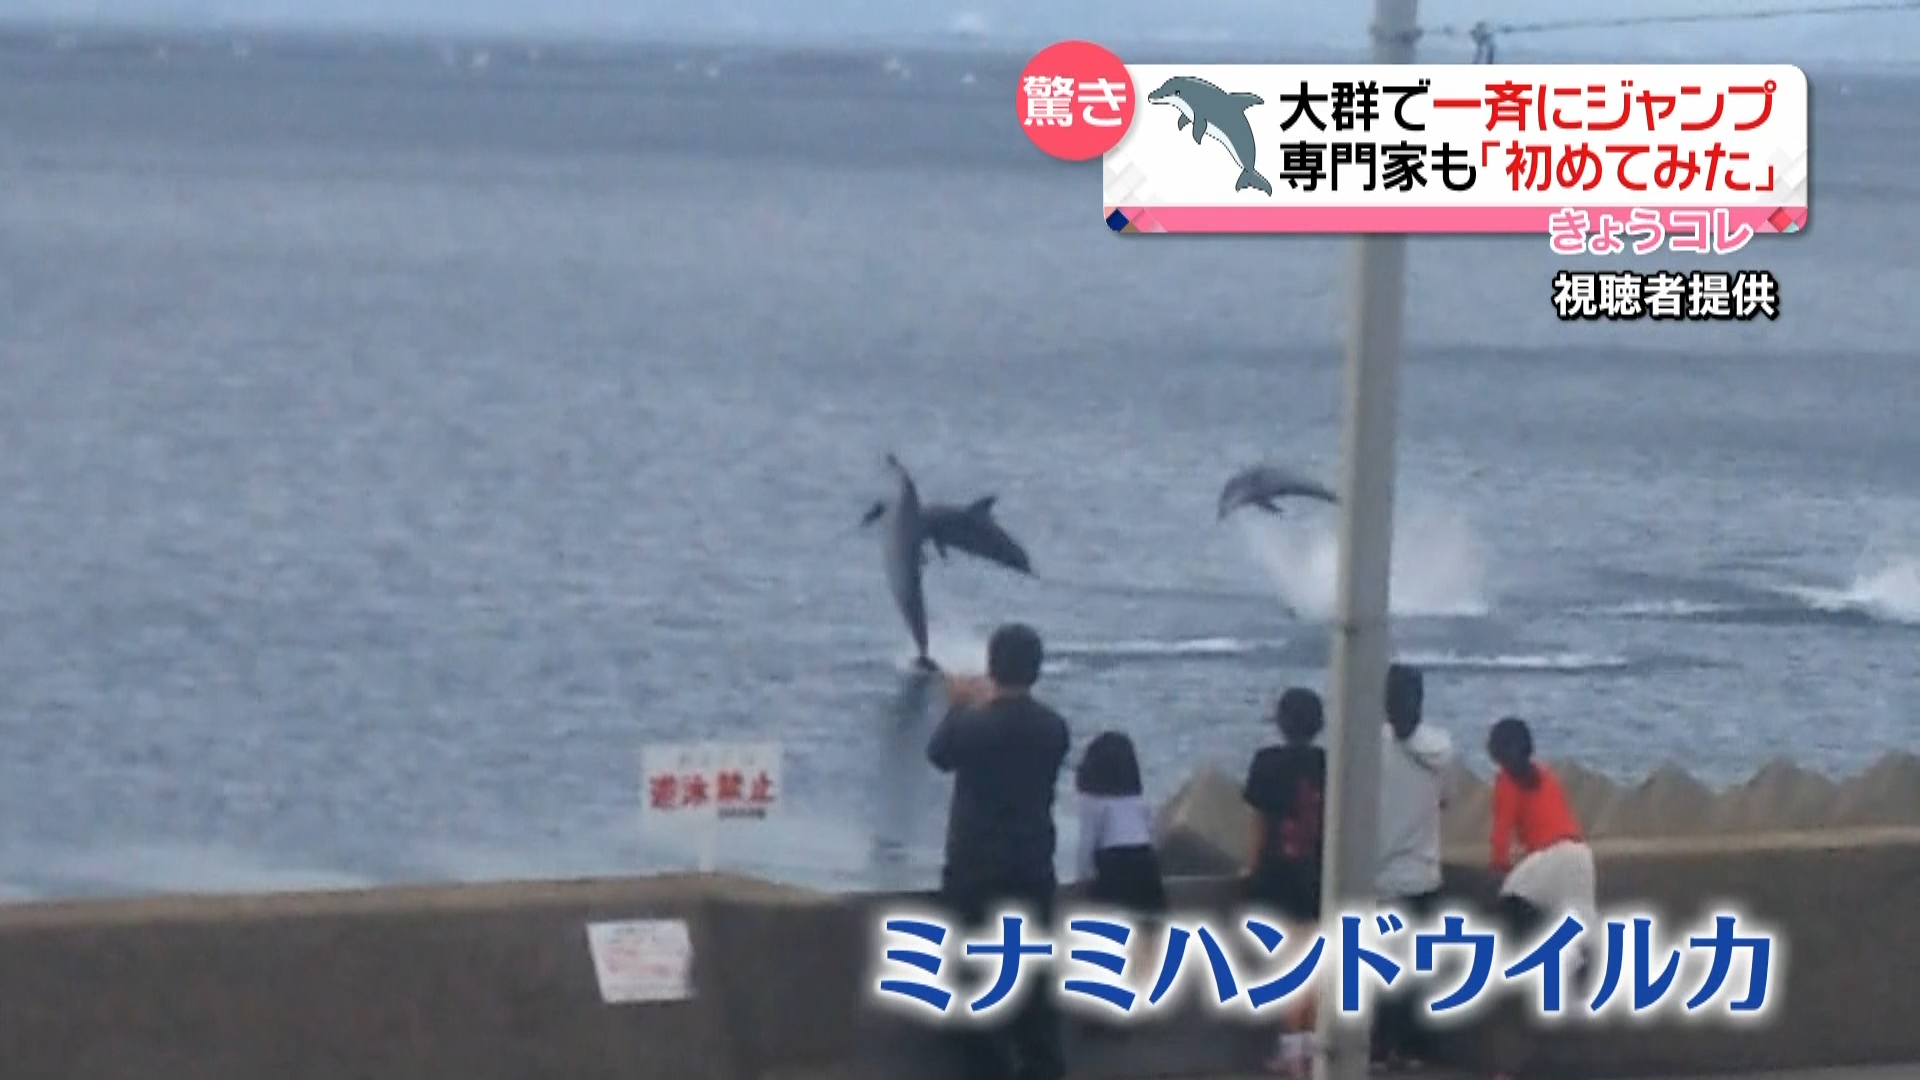 イルカ大群が一斉ジャンプ 驚異行動捉える